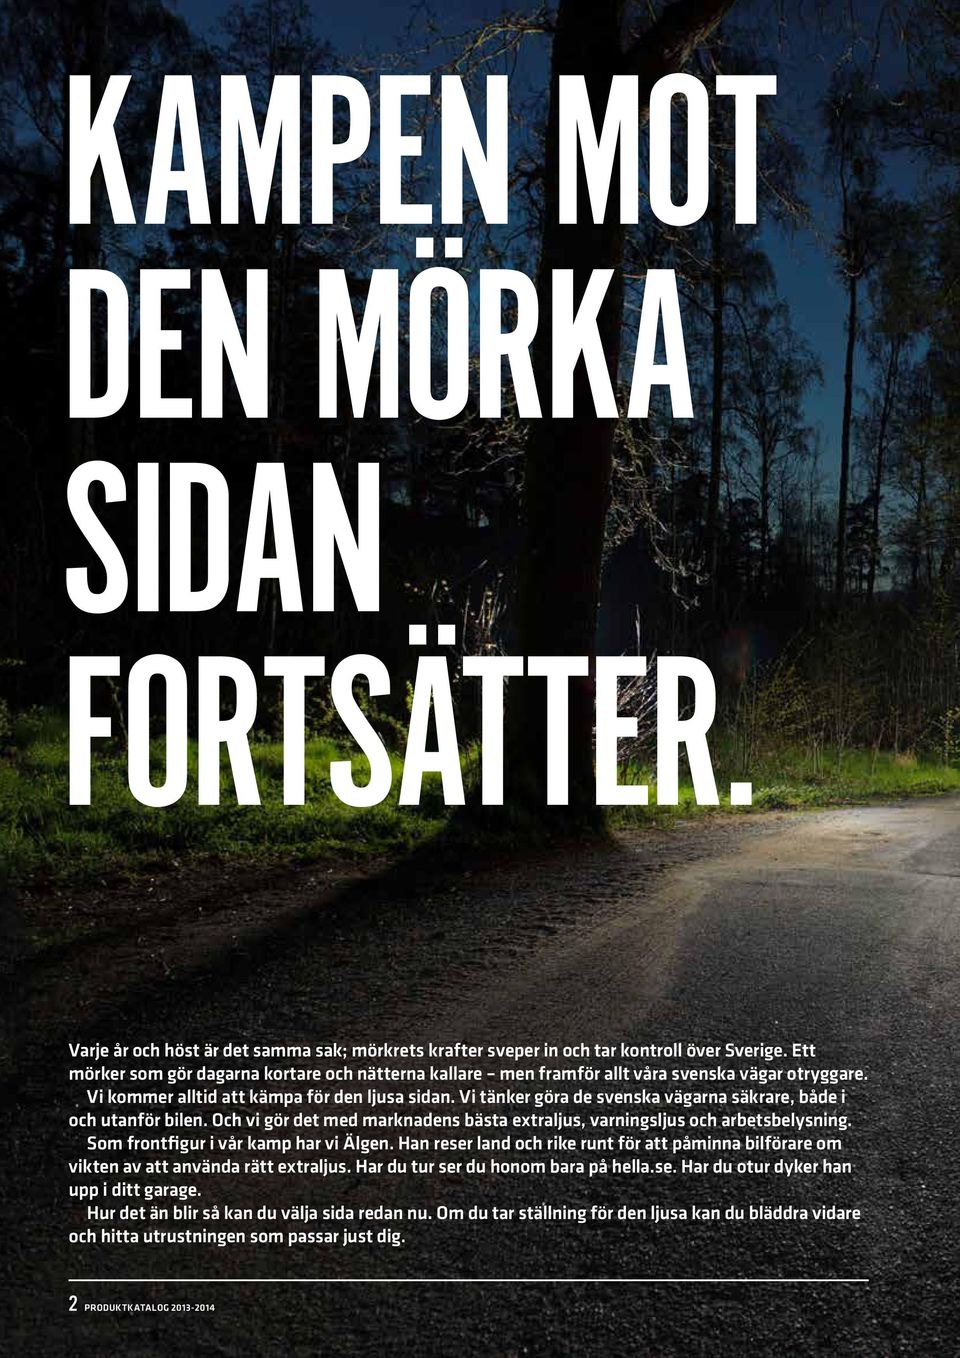 Vi tänker göra de svenska vägarna säkrare, både i och utanför bilen. Och vi gör det med marknadens bästa extraljus, varningsljus och arbetsbelysning. Som frontfigur i vår kamp har vi Älgen.